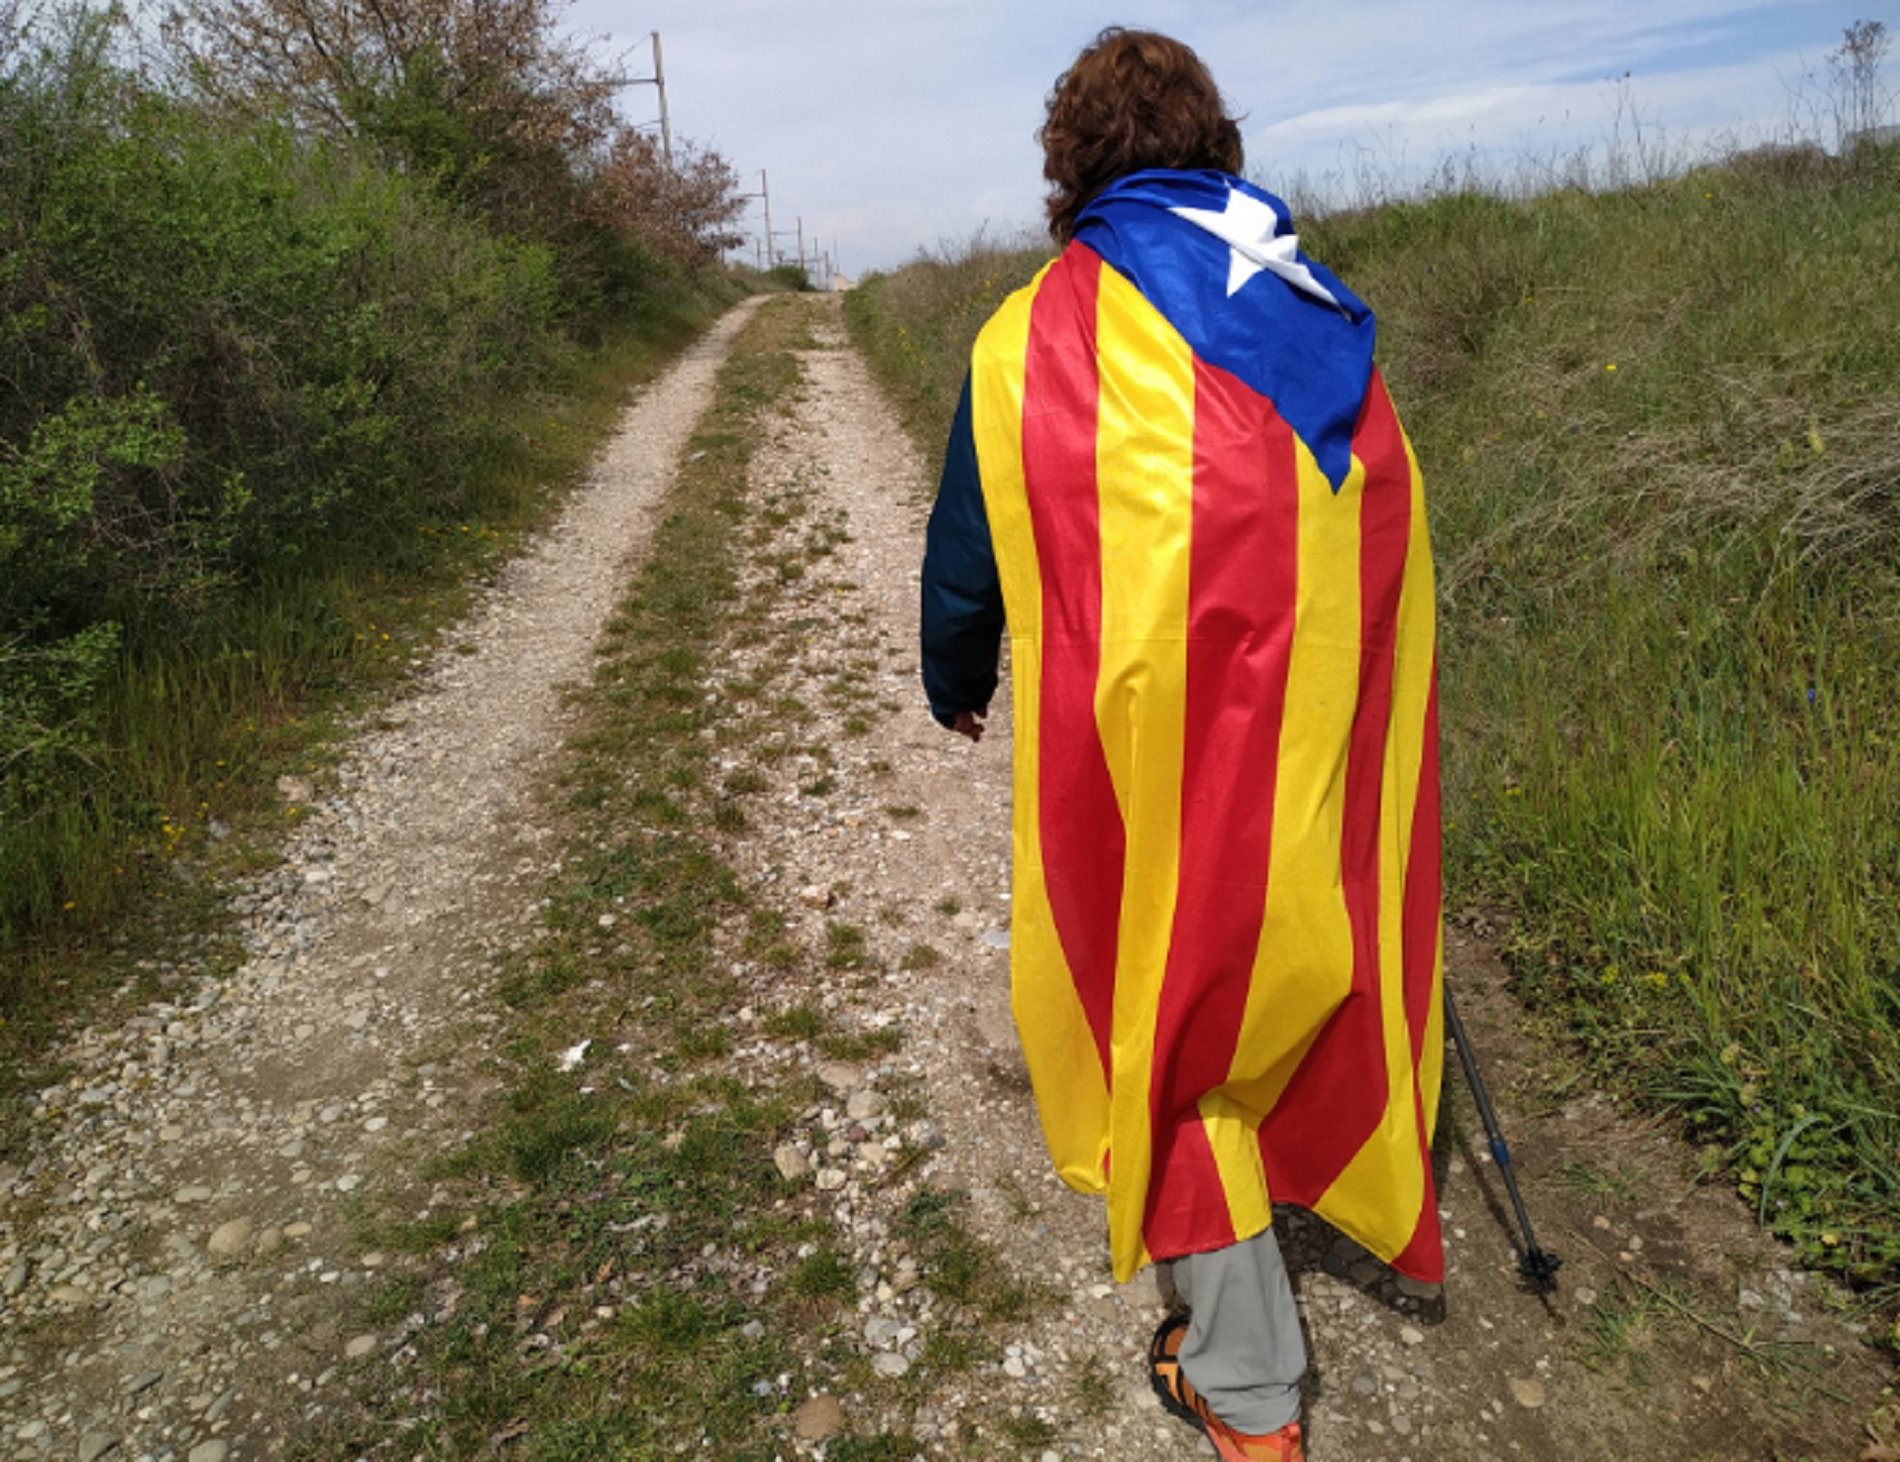 Un activista caminará 1.200km hasta el corazón de Europa para denunciar el juicio al procés